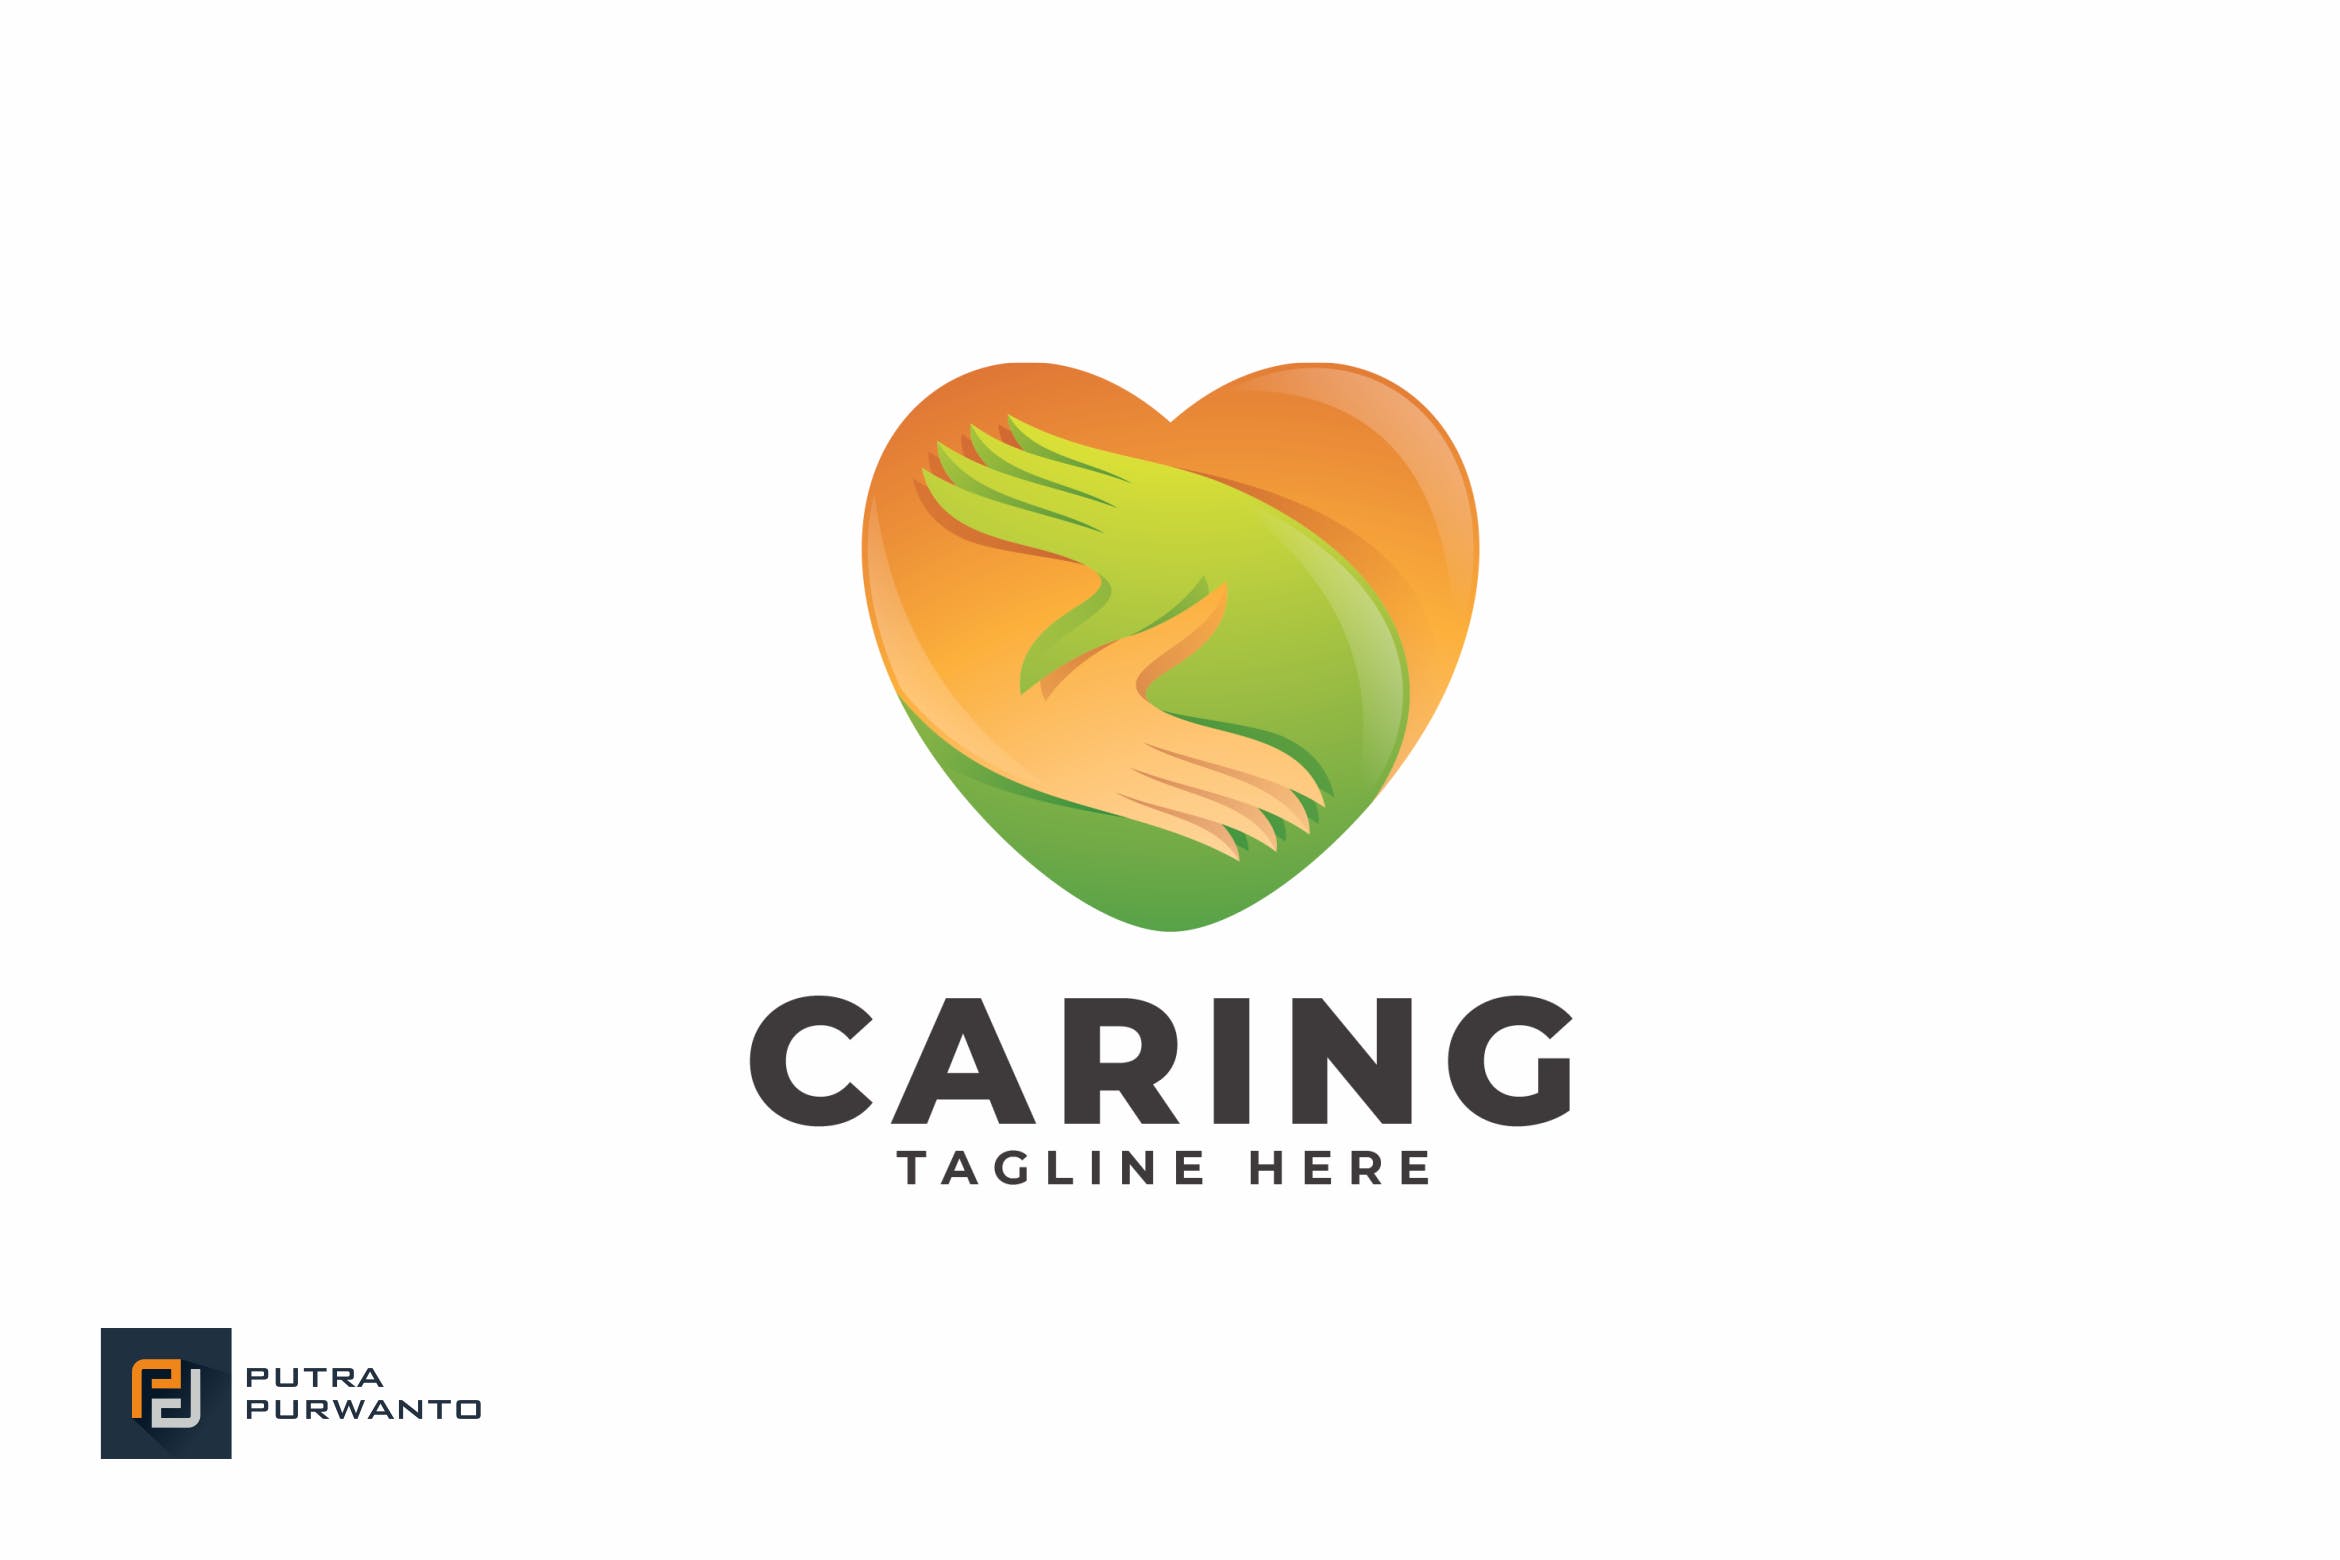 爱心之手慈善互助组织机构创意Logo设计模板 Caring – Logo Template插图